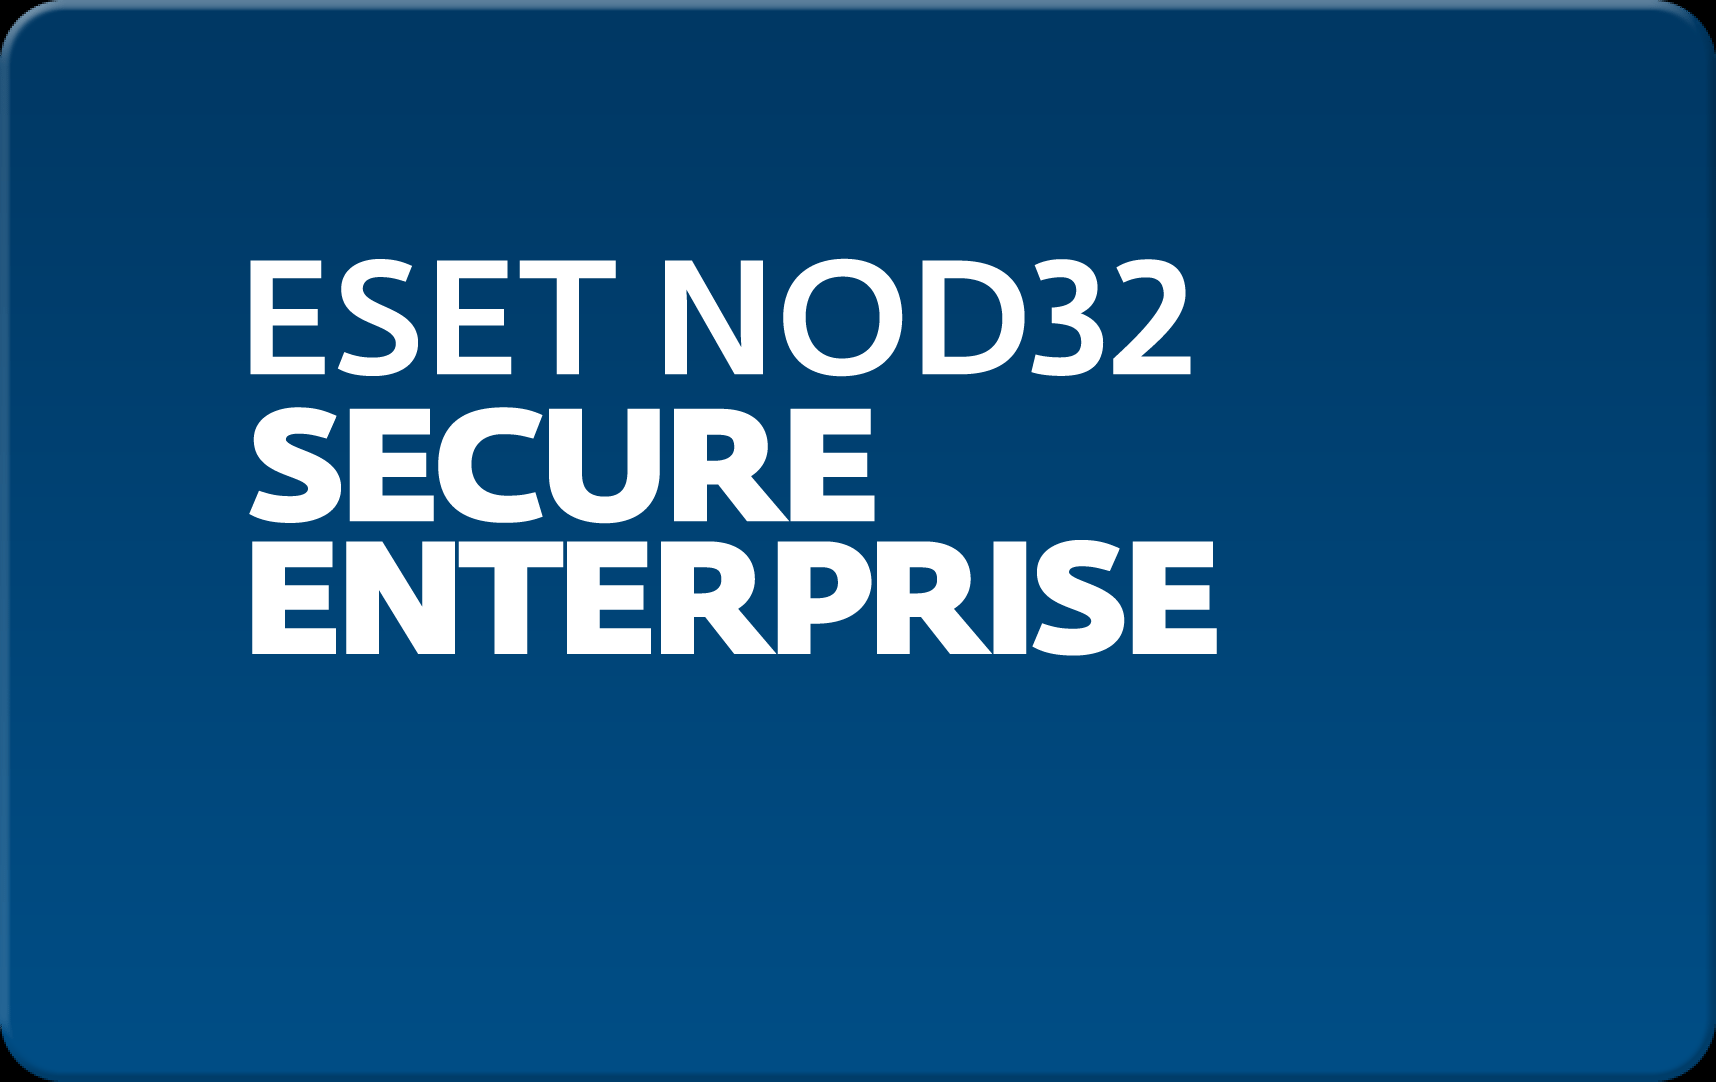        Eset NOD32 Secure Enterprise  171  NOD32-ESE-NS-1-171  #1